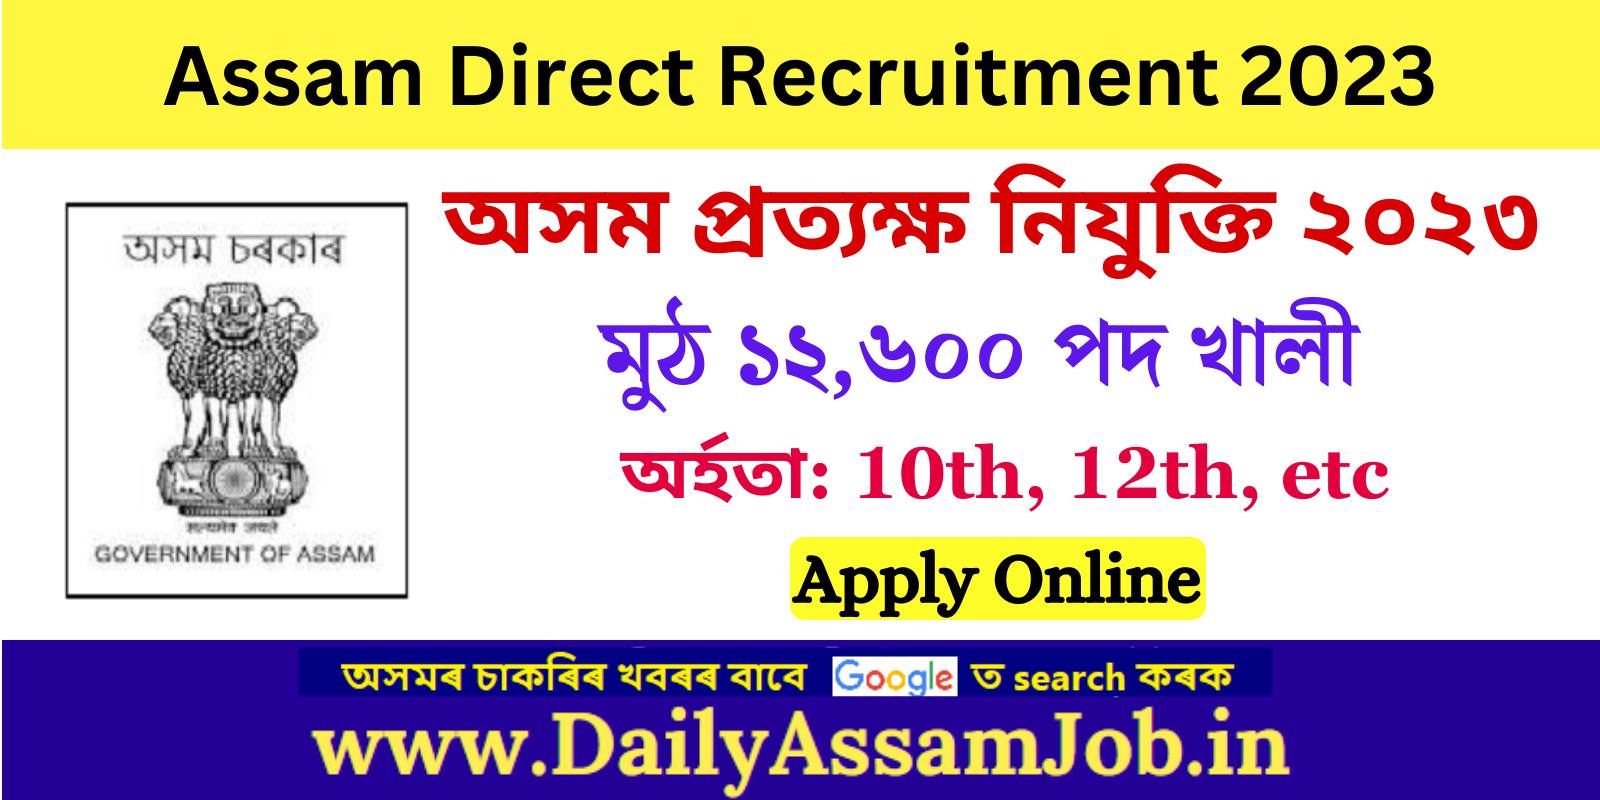 Assam Career :: Assam Direct Recruitment 2023 for 12600 Grade III and Grade IV Vacancy